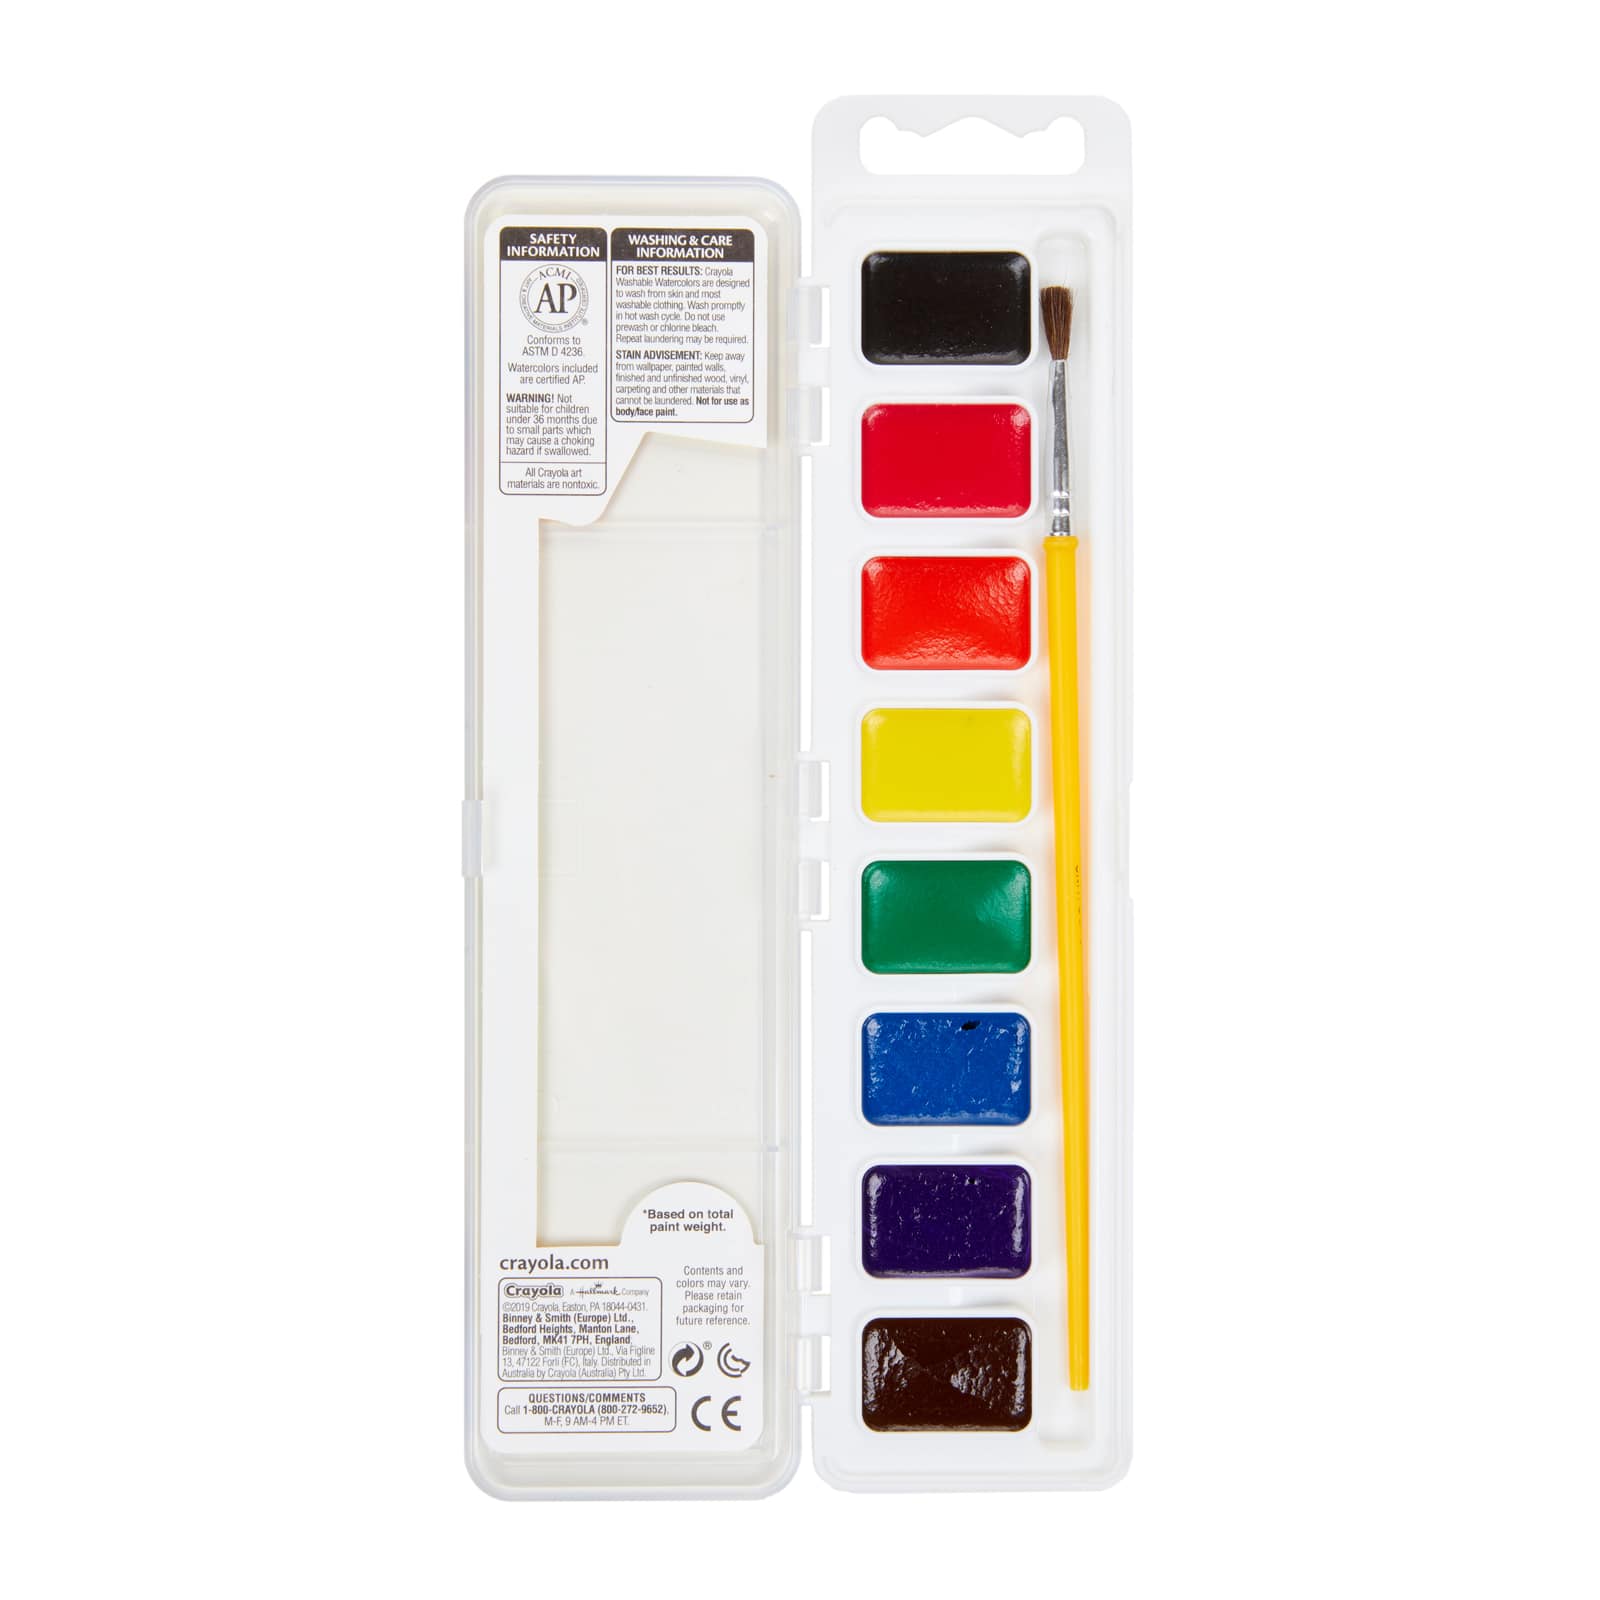 Crayola® Washable Paint Brush Pens, Michaels